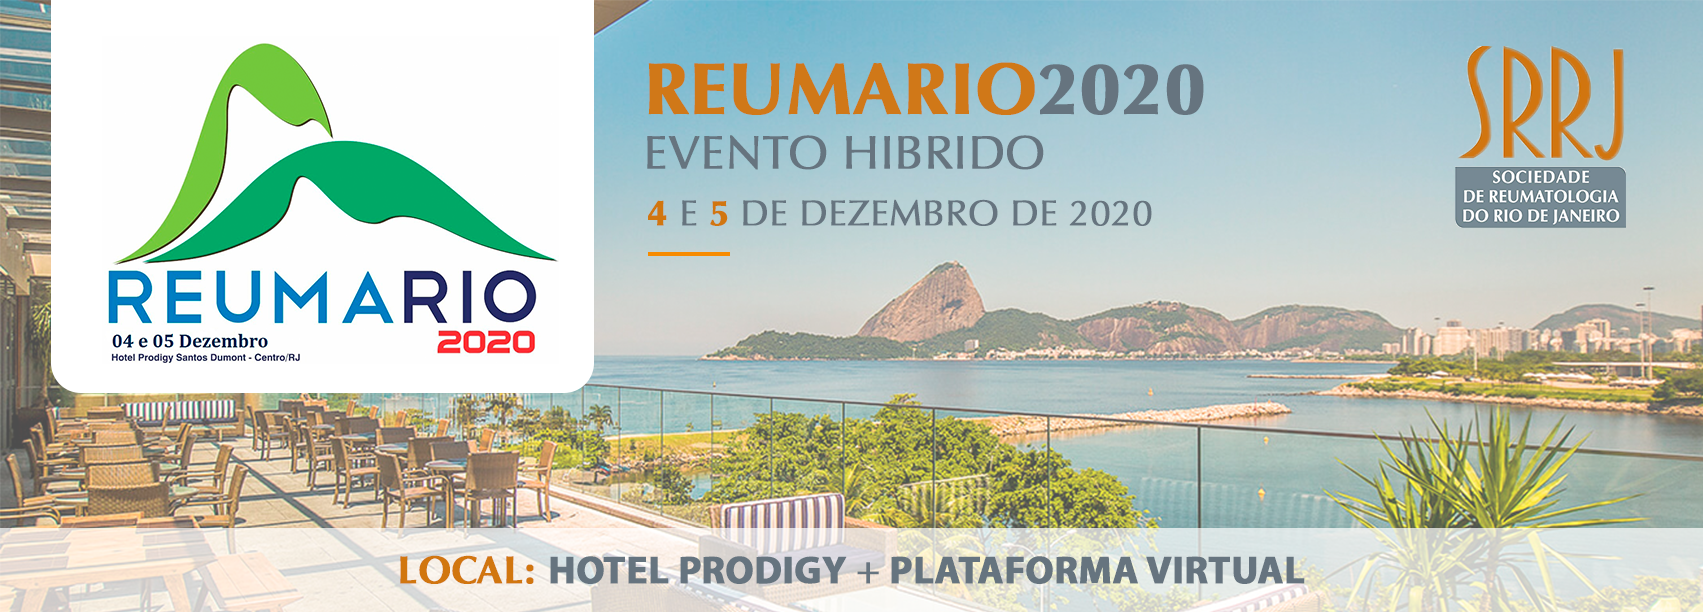 ReumaRio 2020 – Evento Híbrido